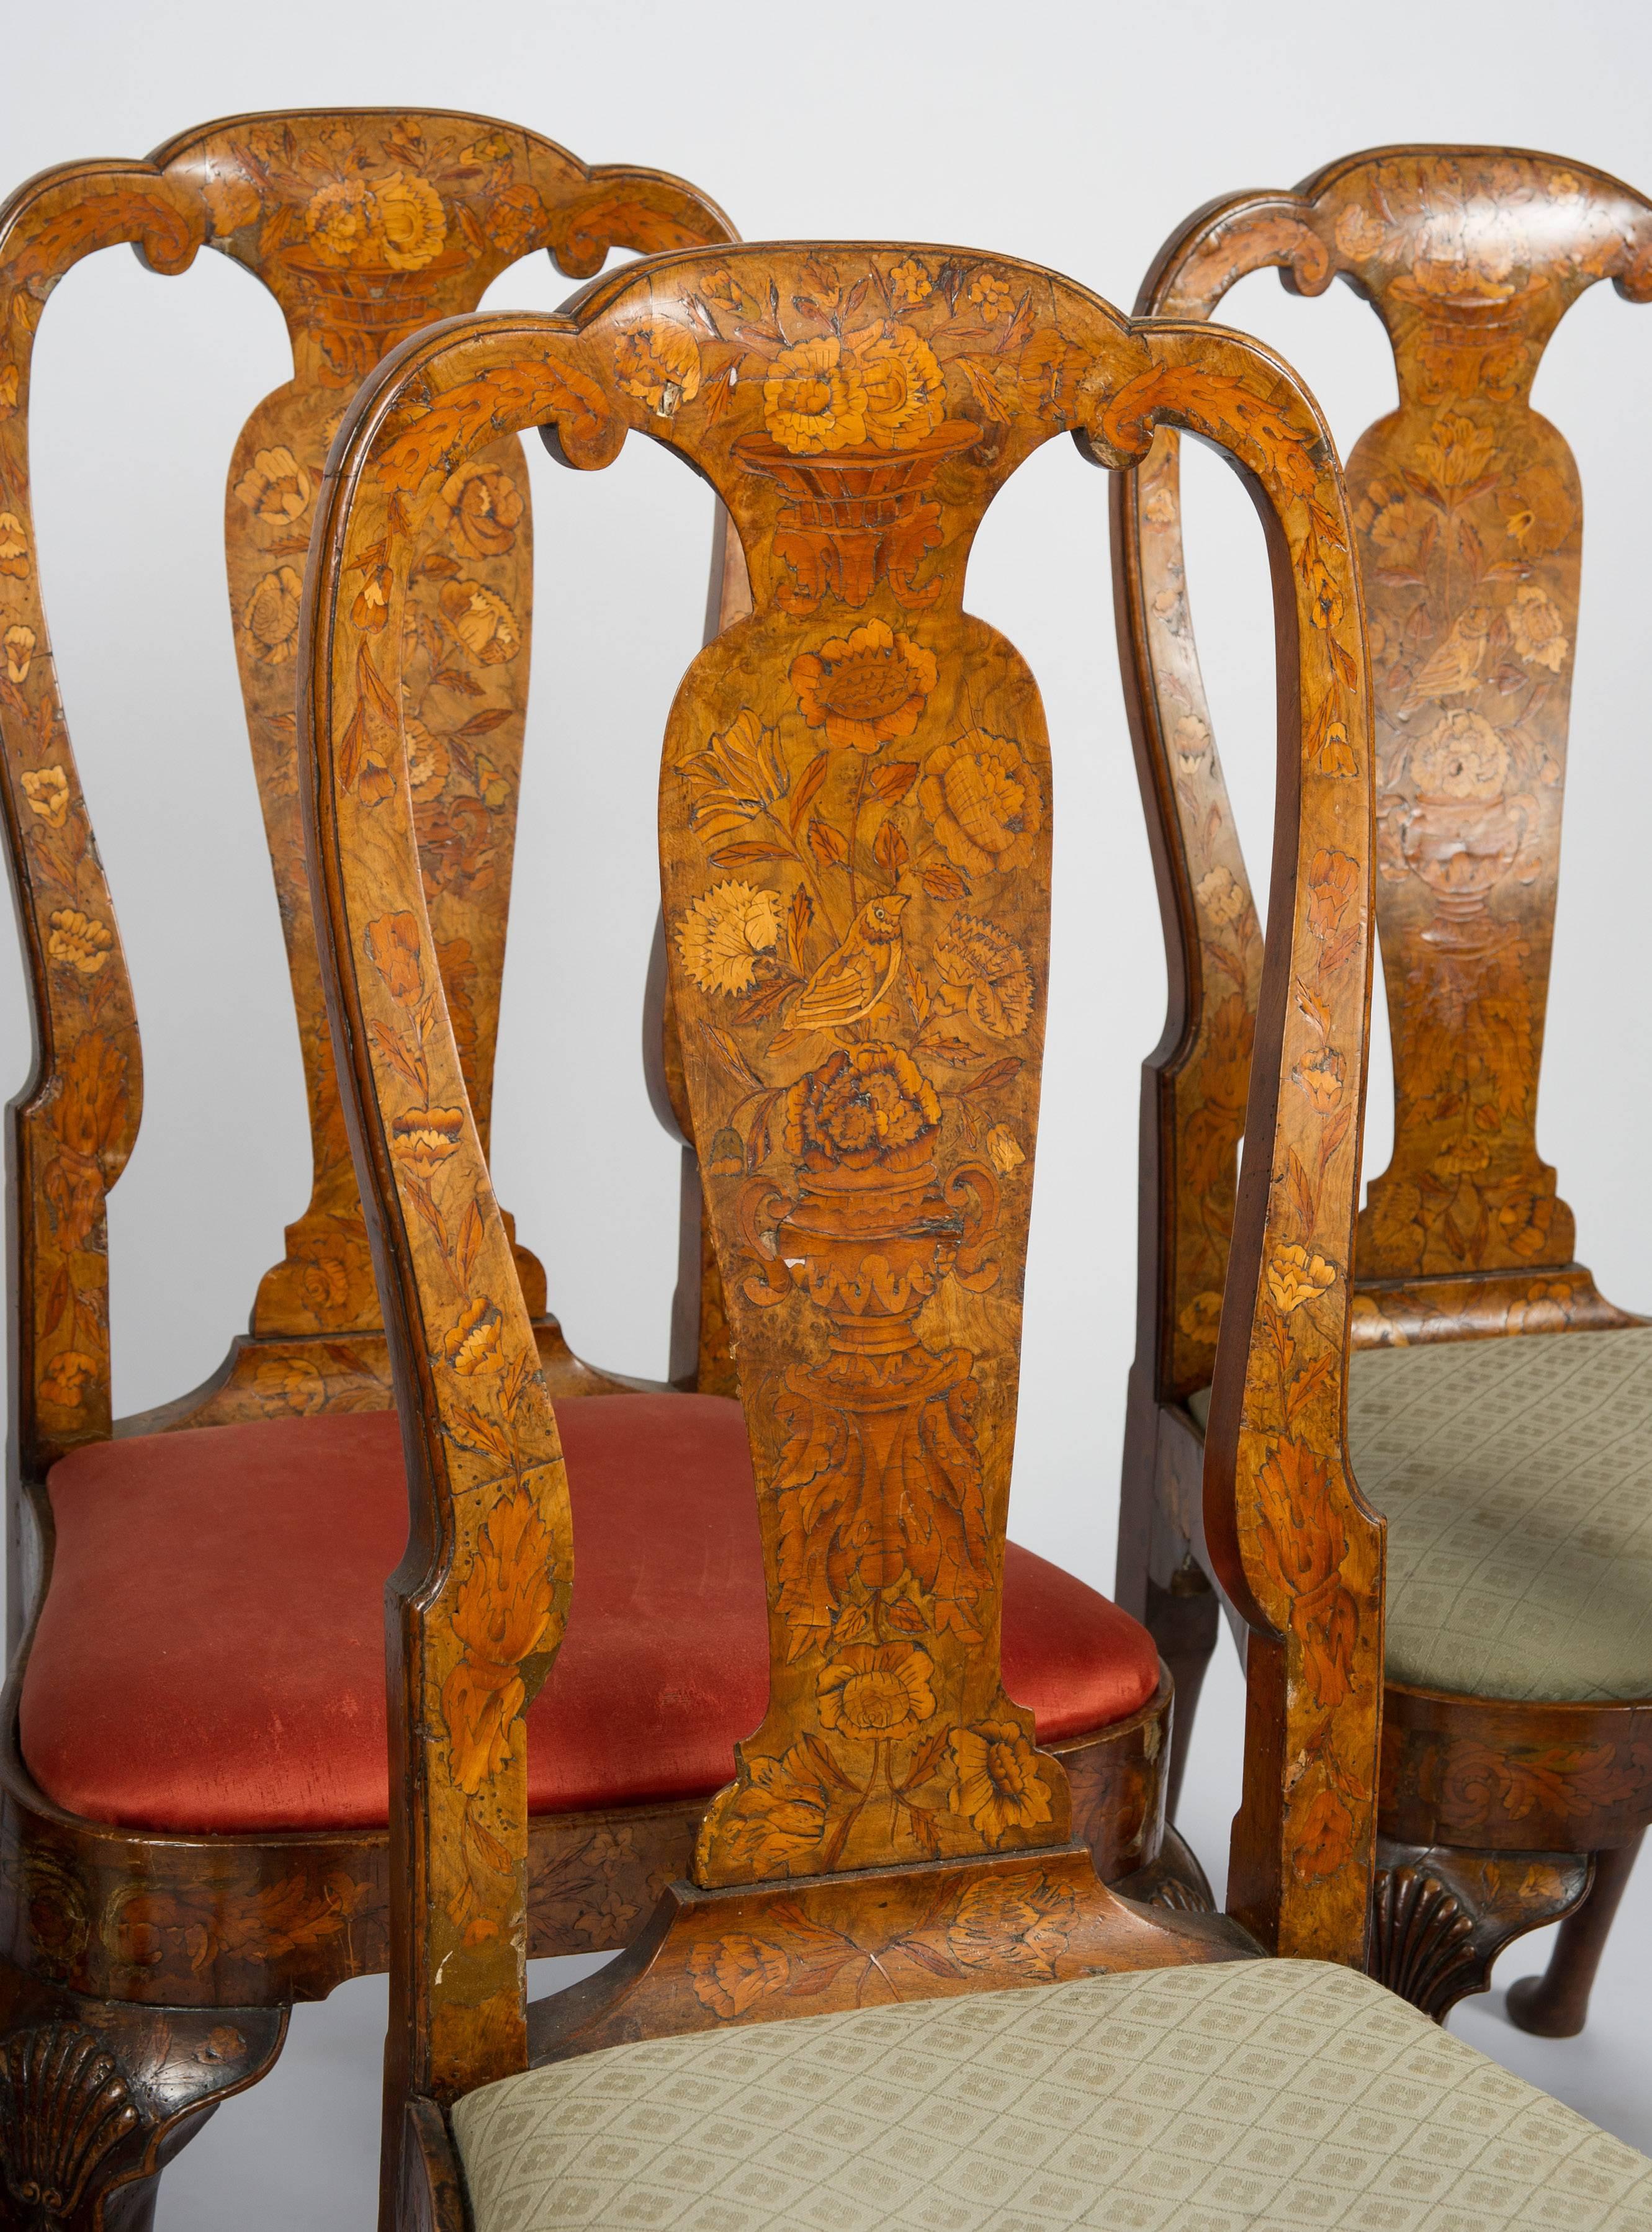 Un ensemble de bonne qualité de six chaises en marqueterie hollandaise du XVIIIe siècle, chacune ayant des fleurs, des feuilles, des oiseaux et des urnes incrustés sur les dossiers et le tablier. Les sièges sont en forme de goutte d'eau et reposent